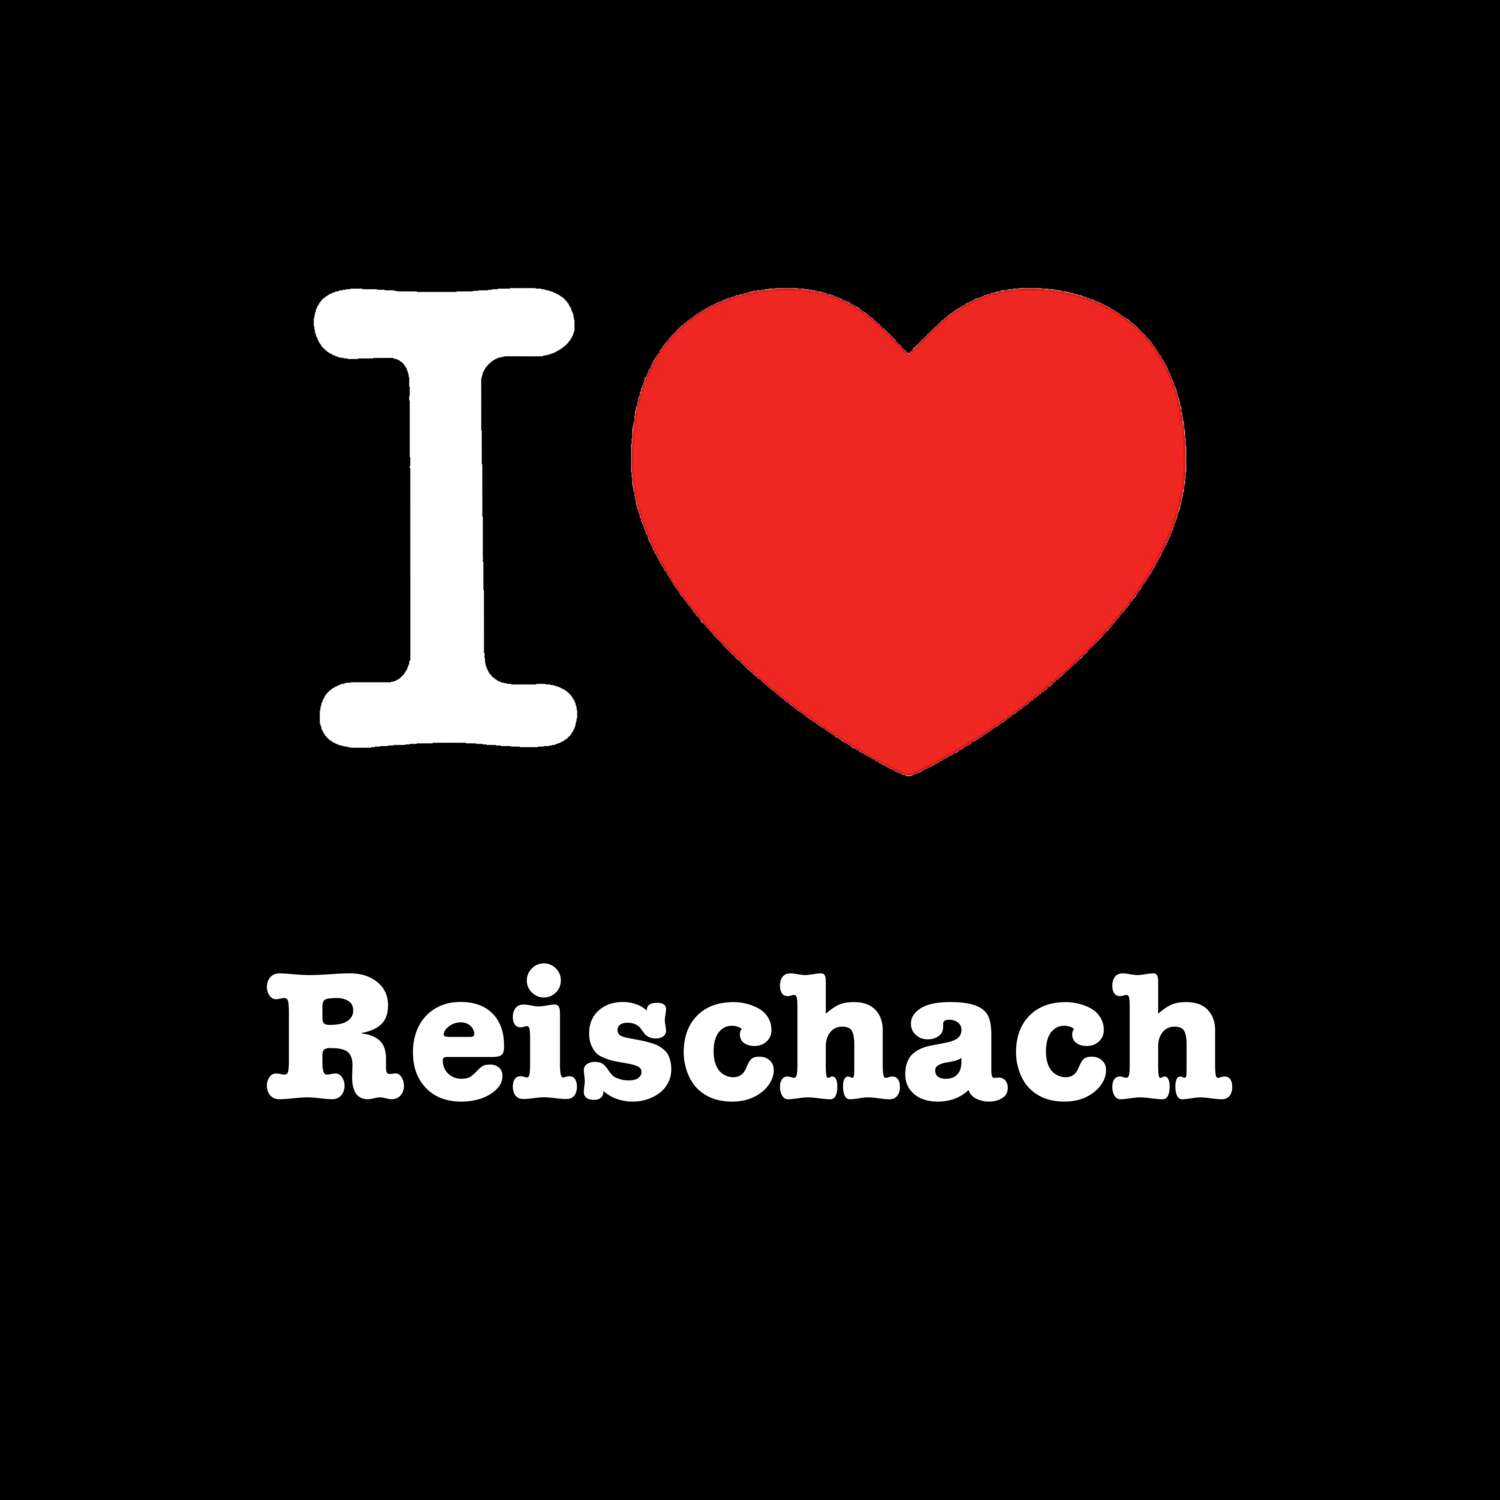 Reischach T-Shirt »I love«